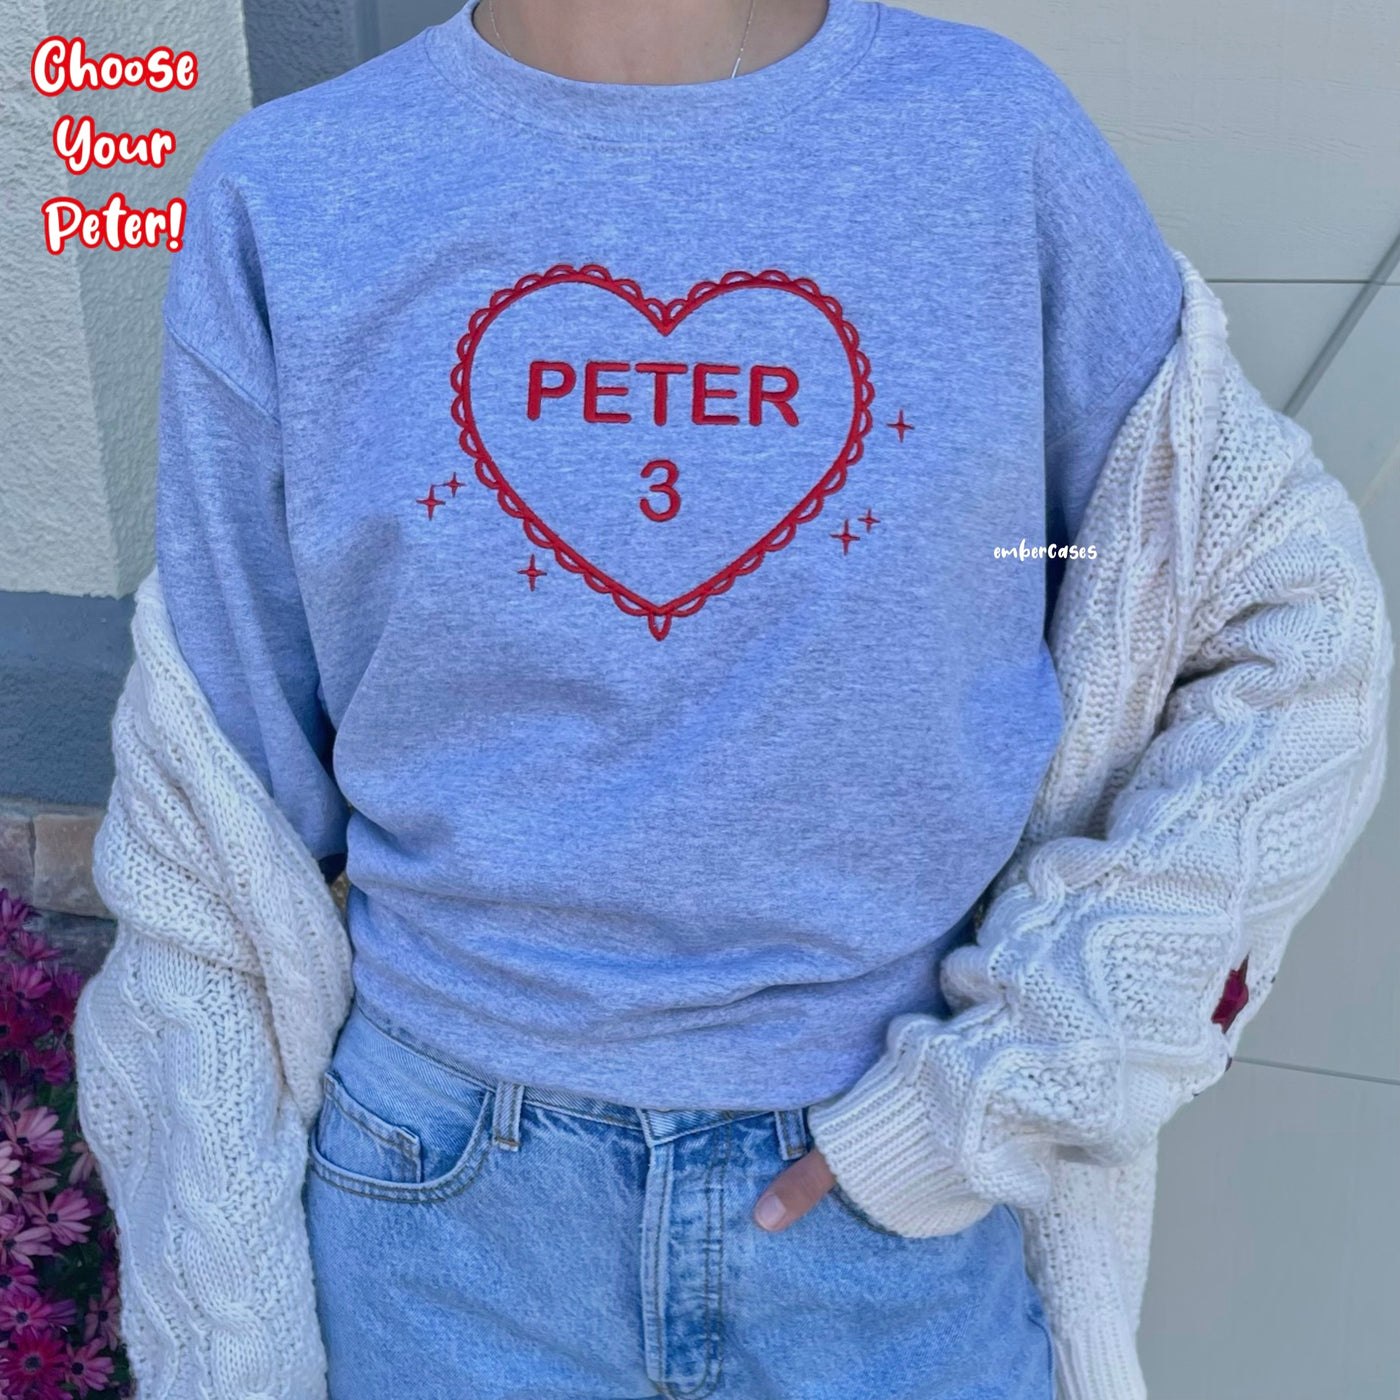 Choose Your Peter! Crewneck